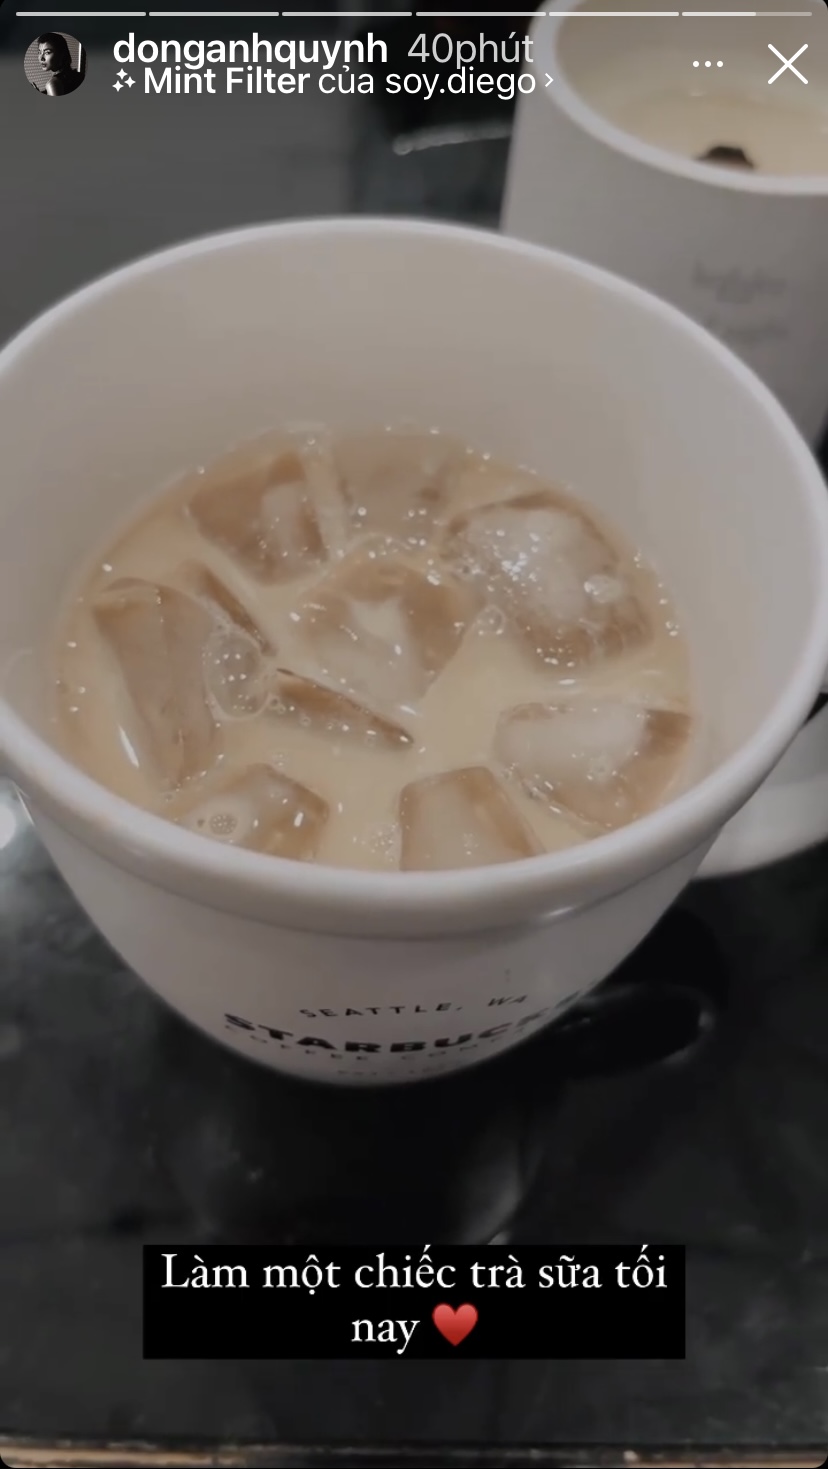 Ly trà sữa mát lạnh vừa đơn giản lại ngon miệng của Đồng Ánh Quỳnh.